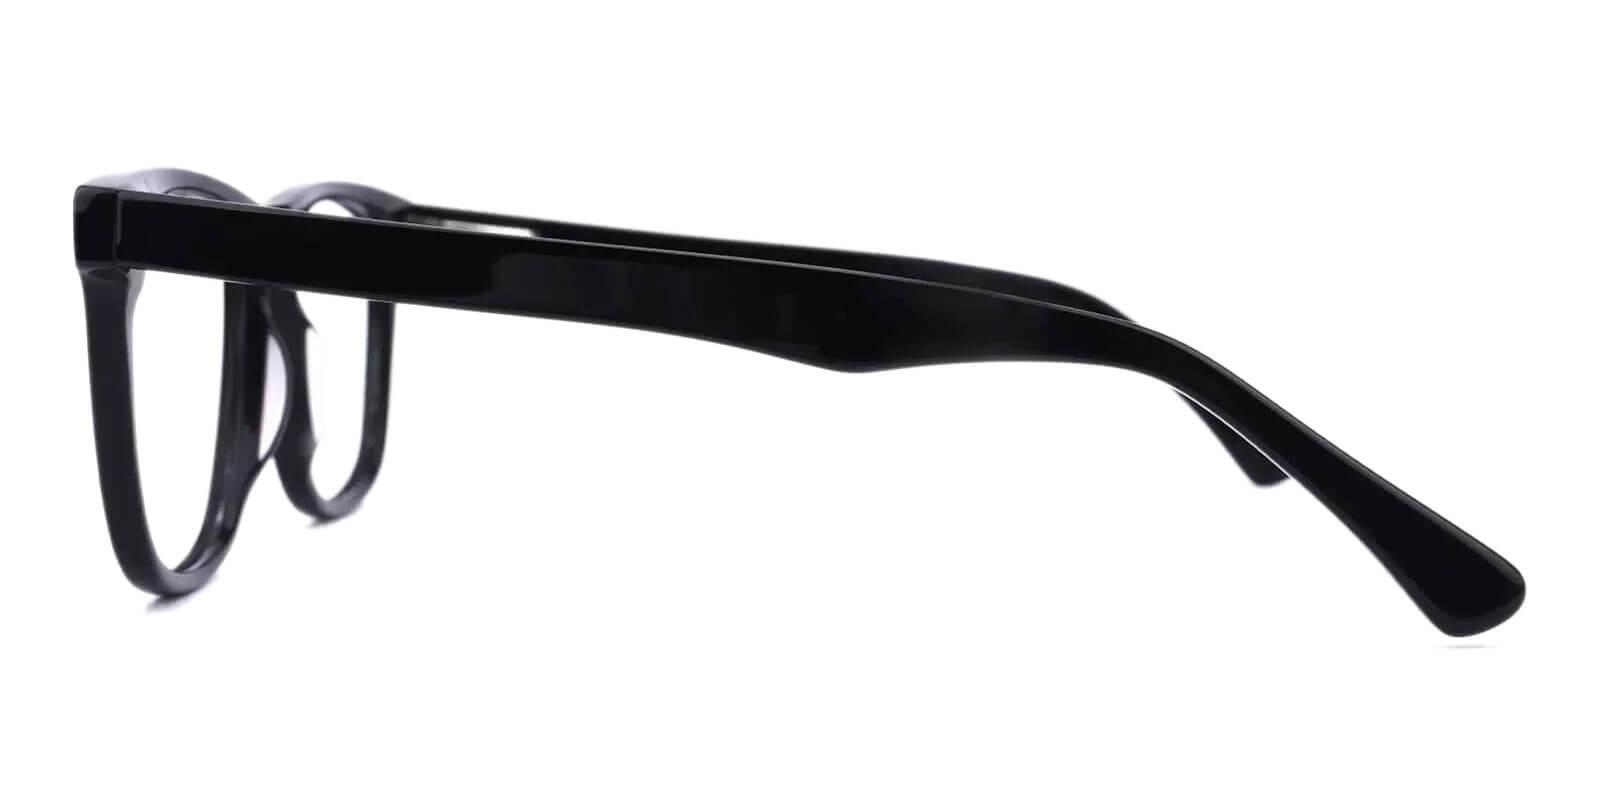 Montalvo Black Acetate Eyeglasses , SpringHinges , UniversalBridgeFit Frames from ABBE Glasses